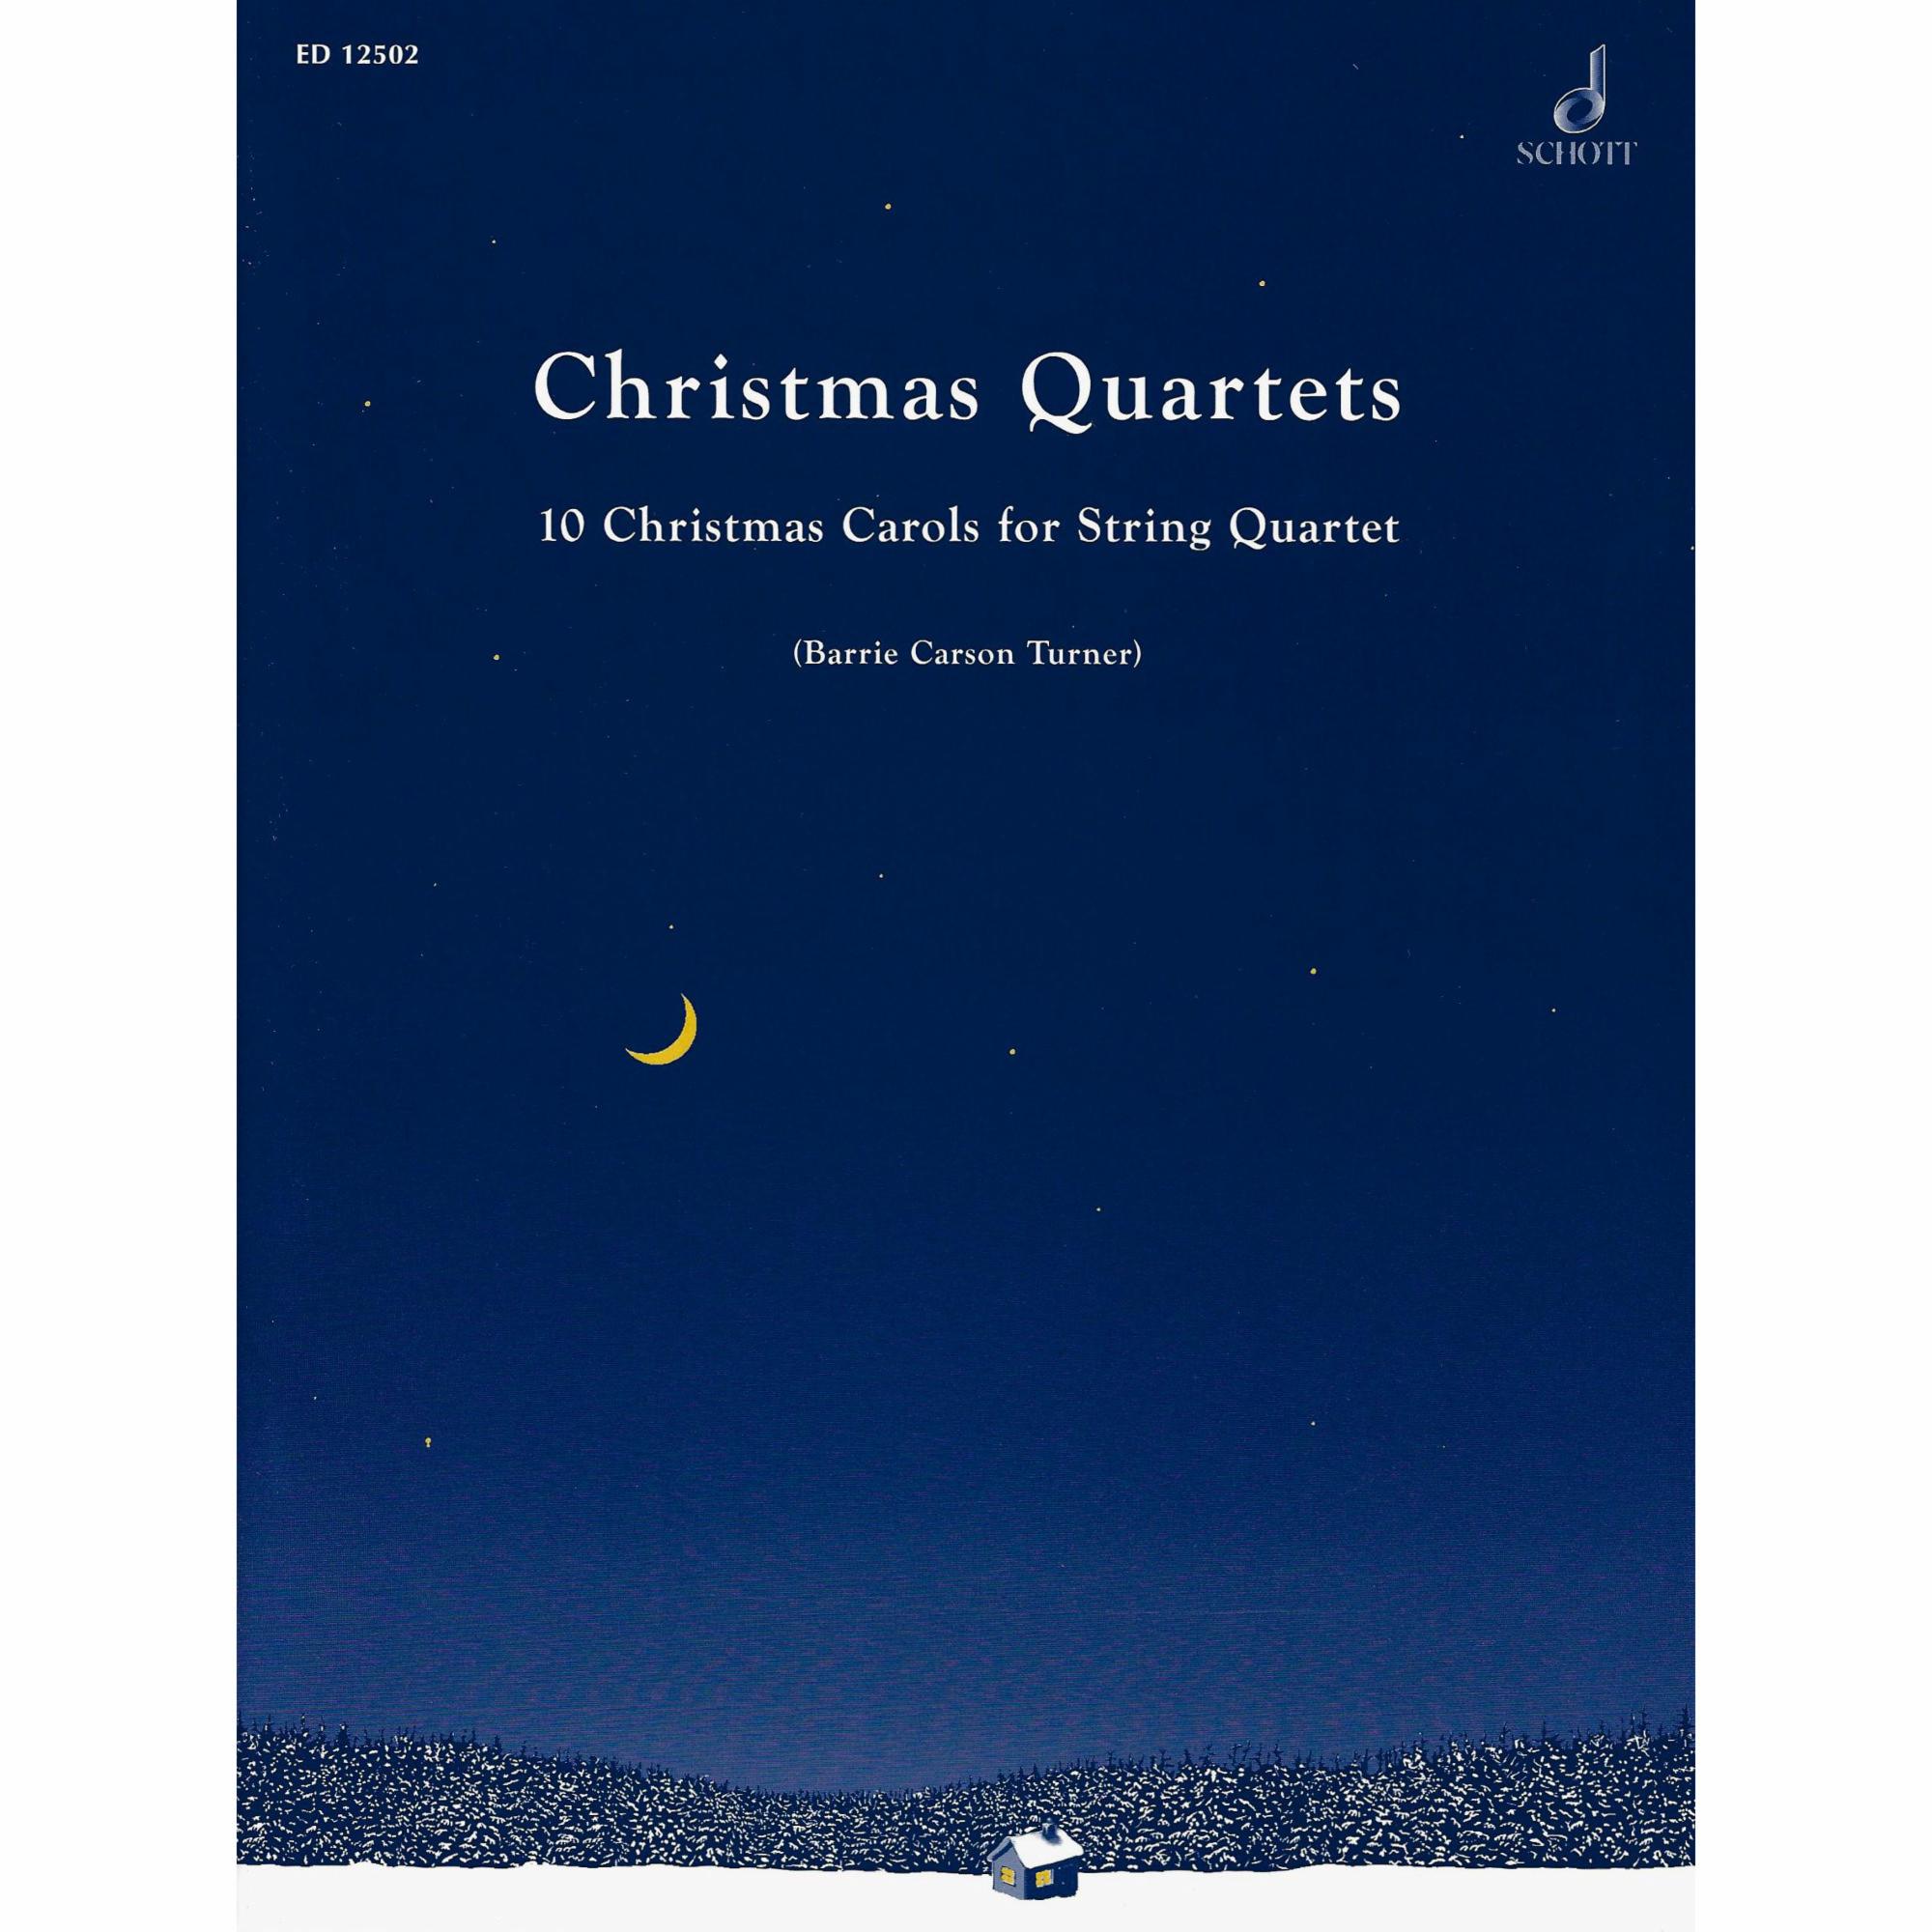 10 Christmas Carols for String Quartet